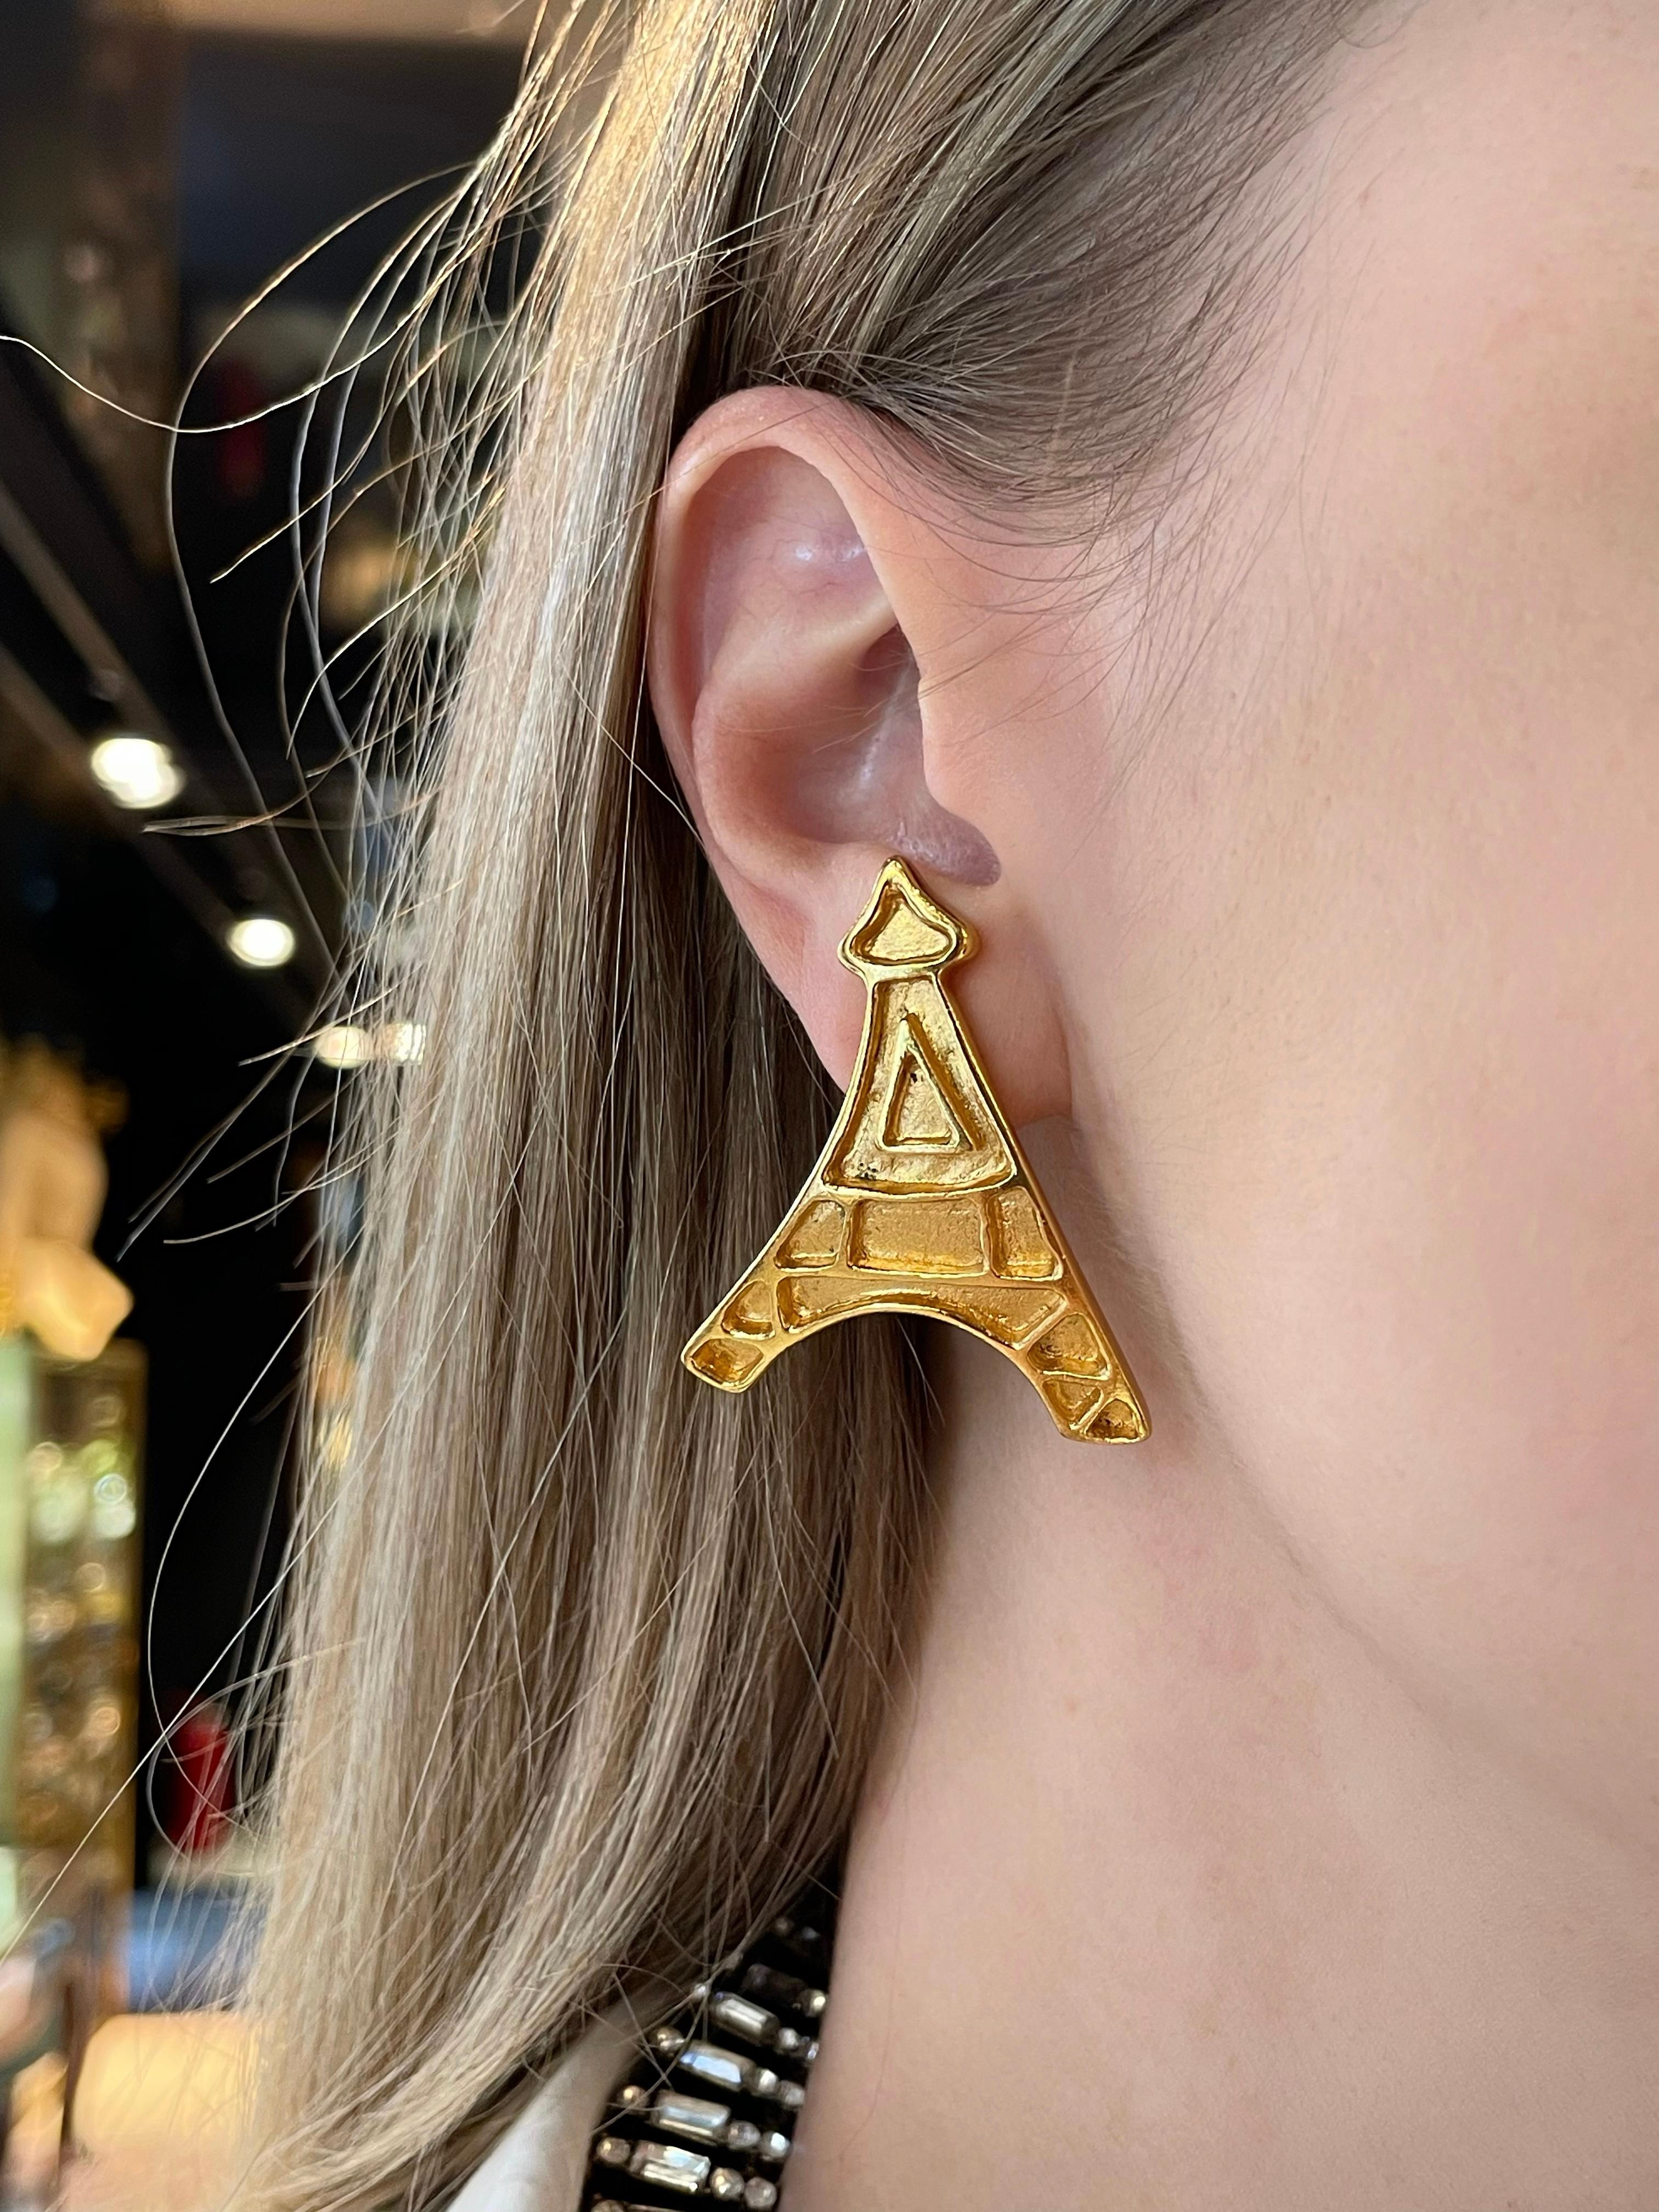 Il s'agit d'une paire de boucles d'oreilles à clip vintage en ton or représentant la silhouette de la tour Eiffel. La pièce est plaquée or, conçue par YSL dans les années 1980.

Marques : 